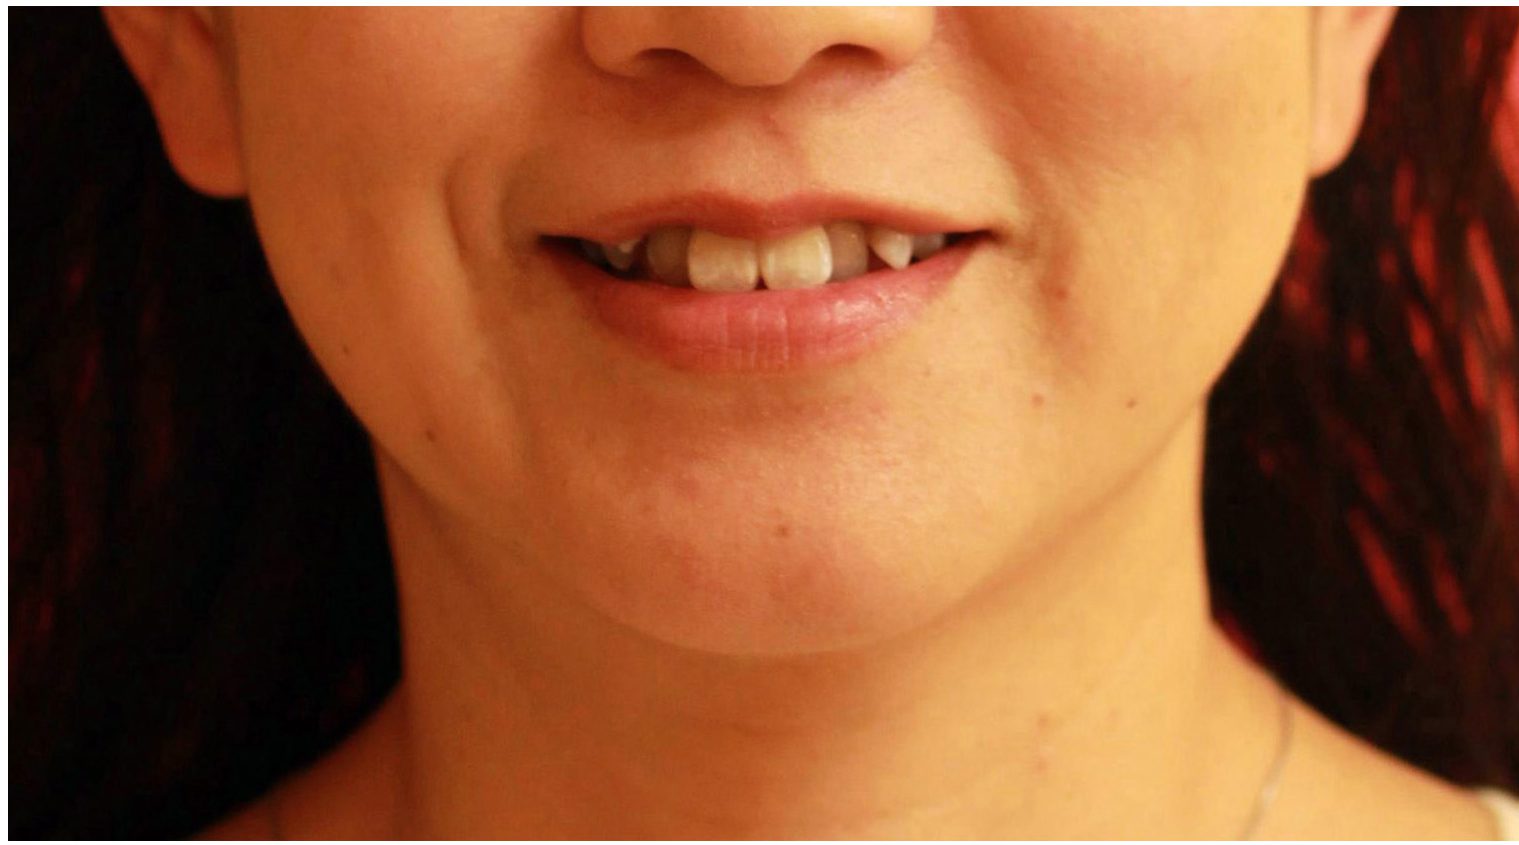 インビザラインによる治療 46歳 女性 「八重歯を治したい」 みやび矯正歯科医院